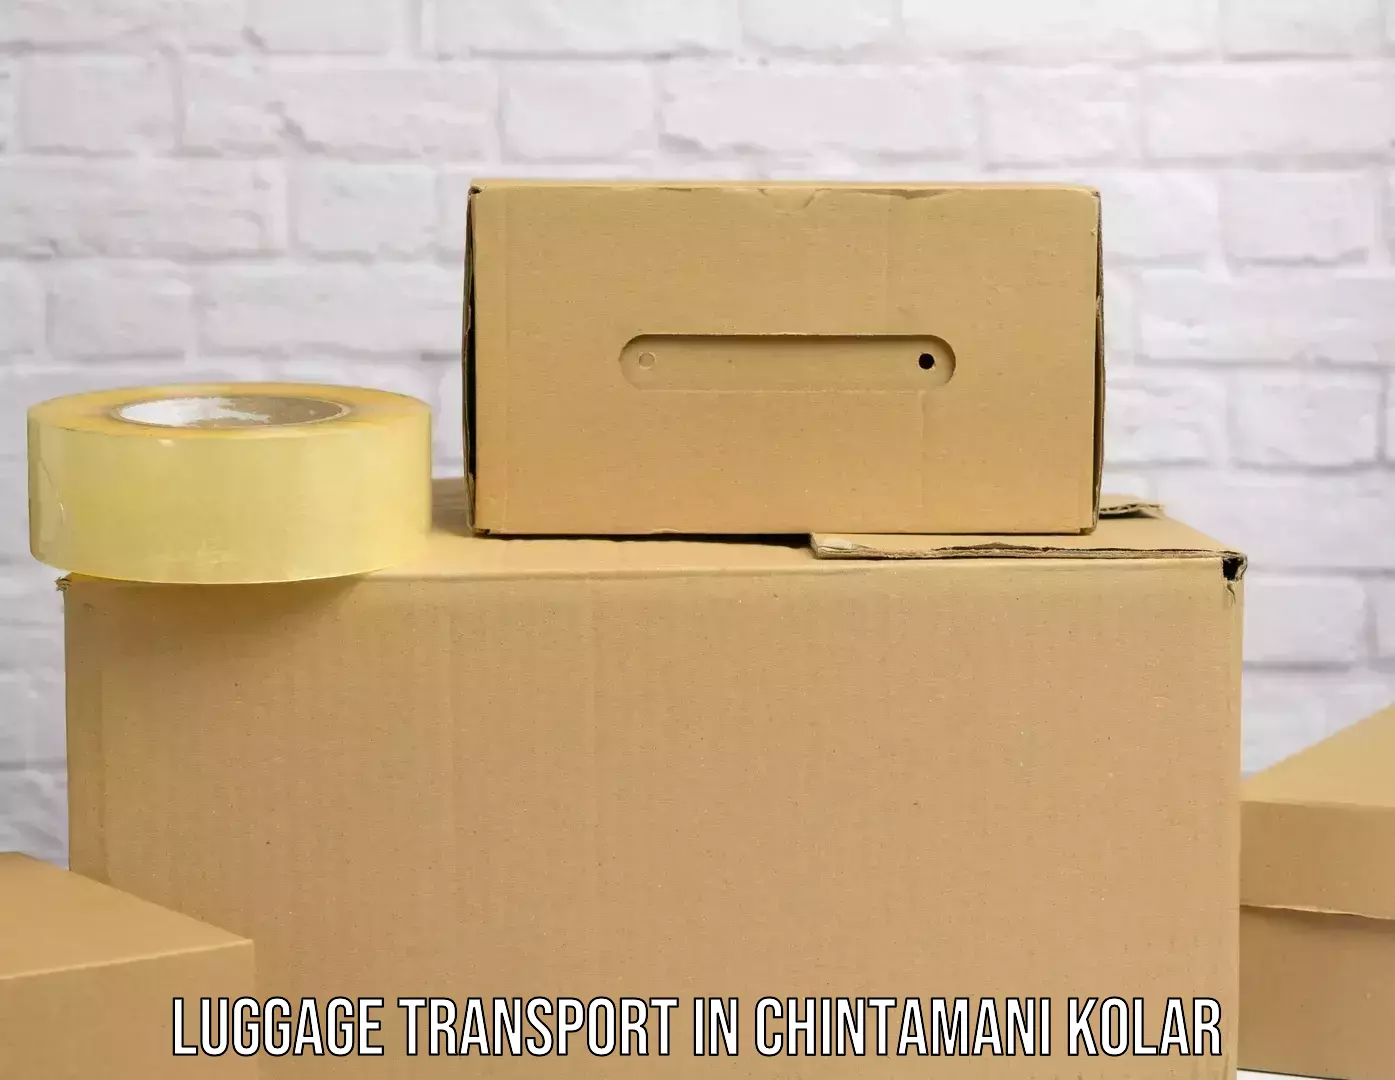 Luggage transport pricing in Chintamani Kolar